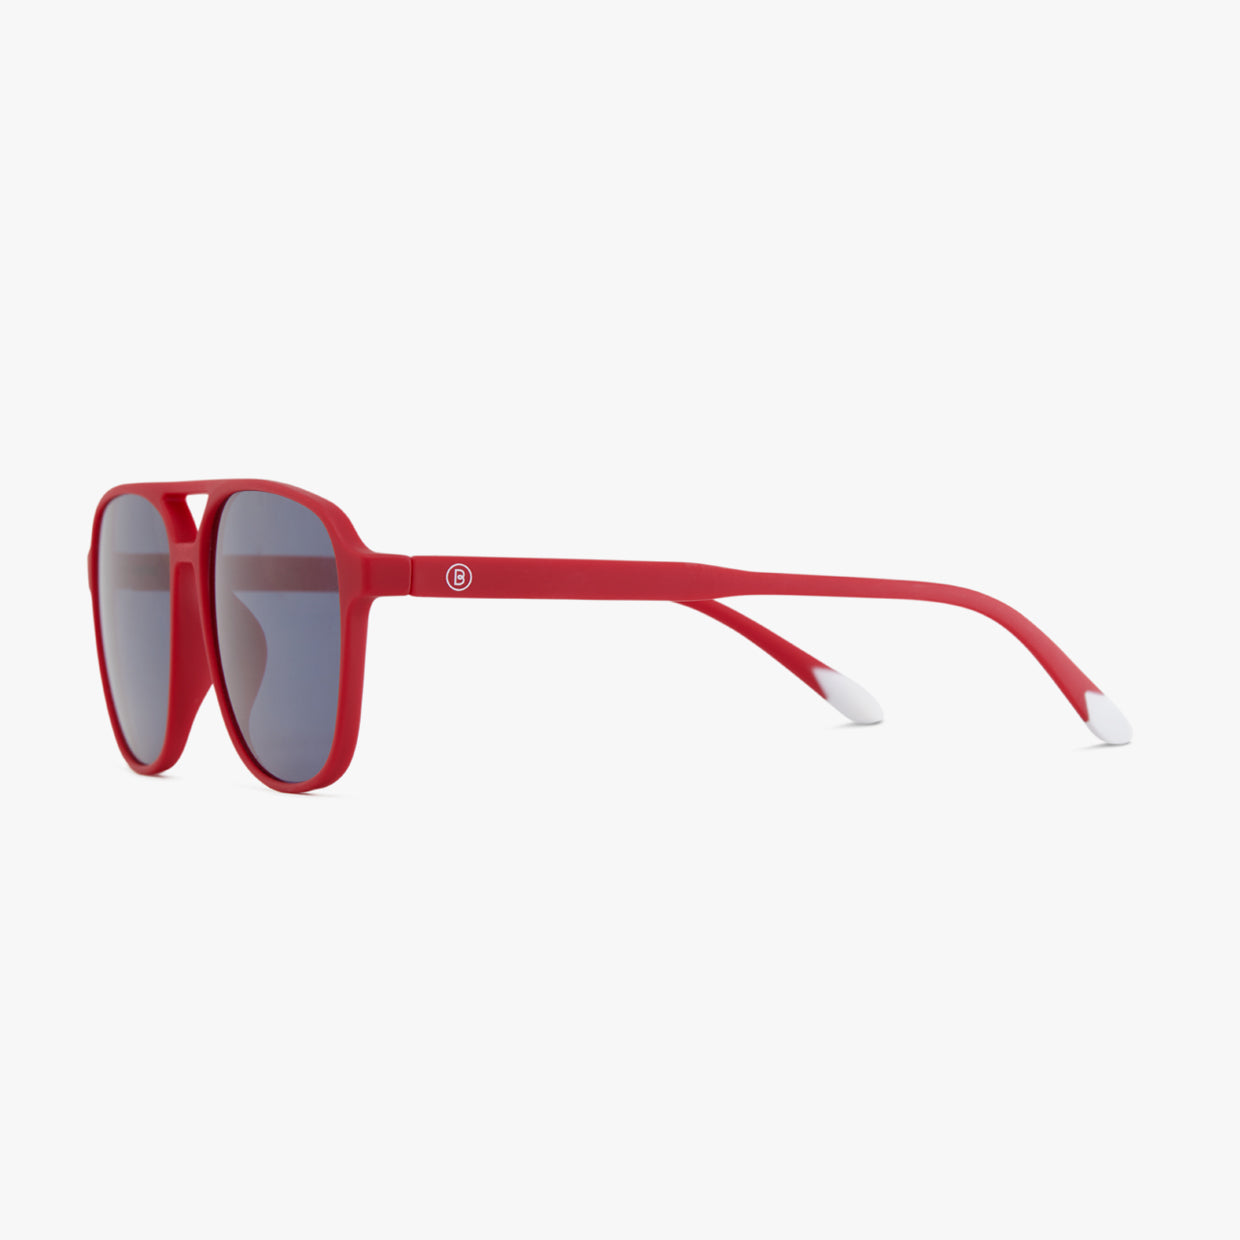 Gucci Sunglasses GG0477S 001 Black/ Gold / Red | Sunglasses, Gucci  sunglasses, Black wayfarer sunglasses